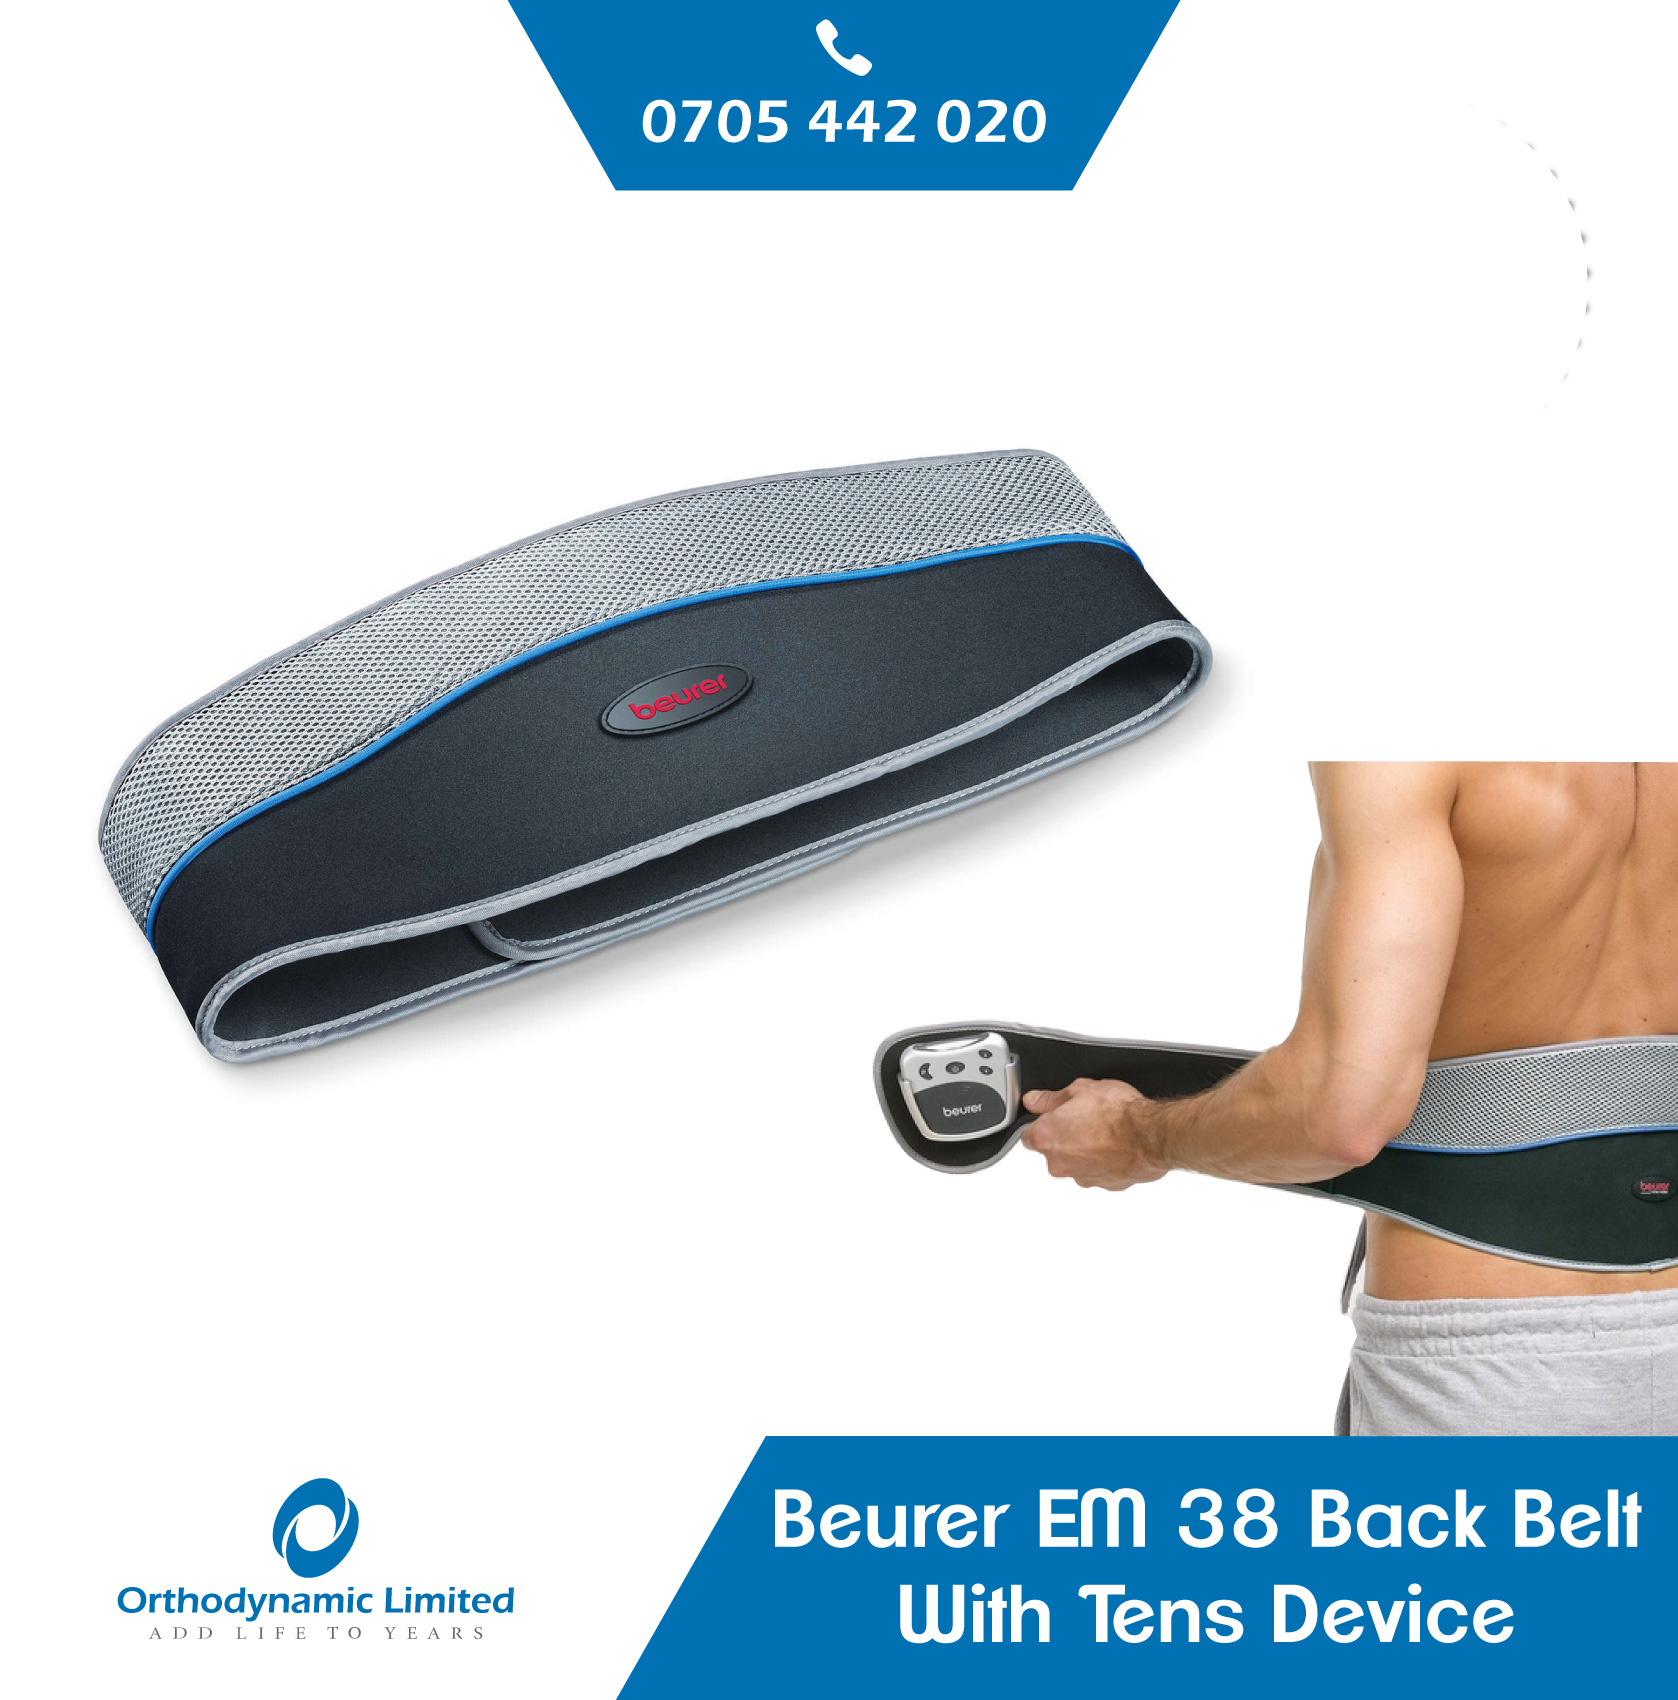 Beurer EM 38 Back Belt With Tens Device - Orthodynamic - 0705442020